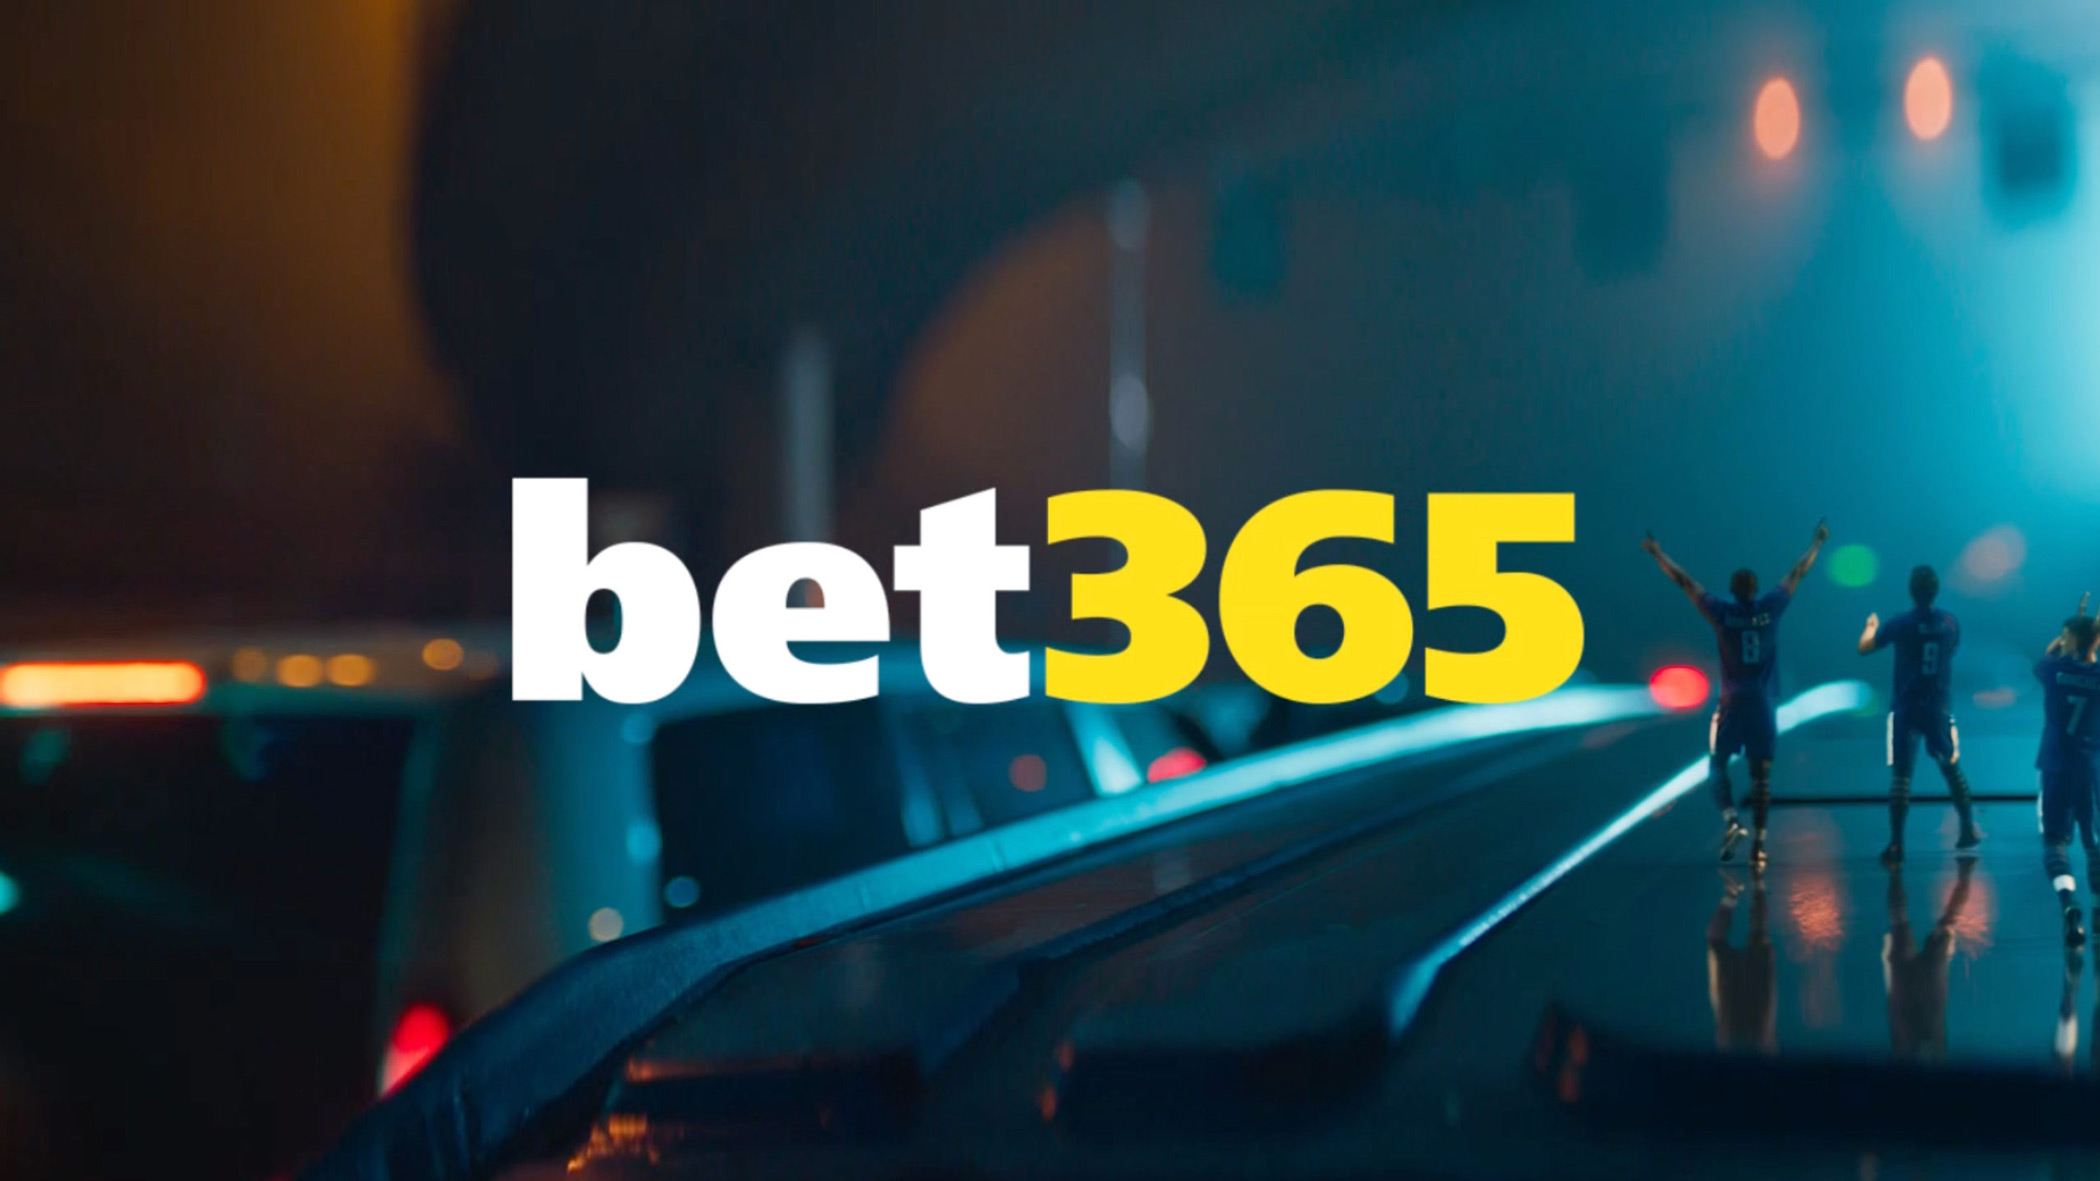 Bet365 